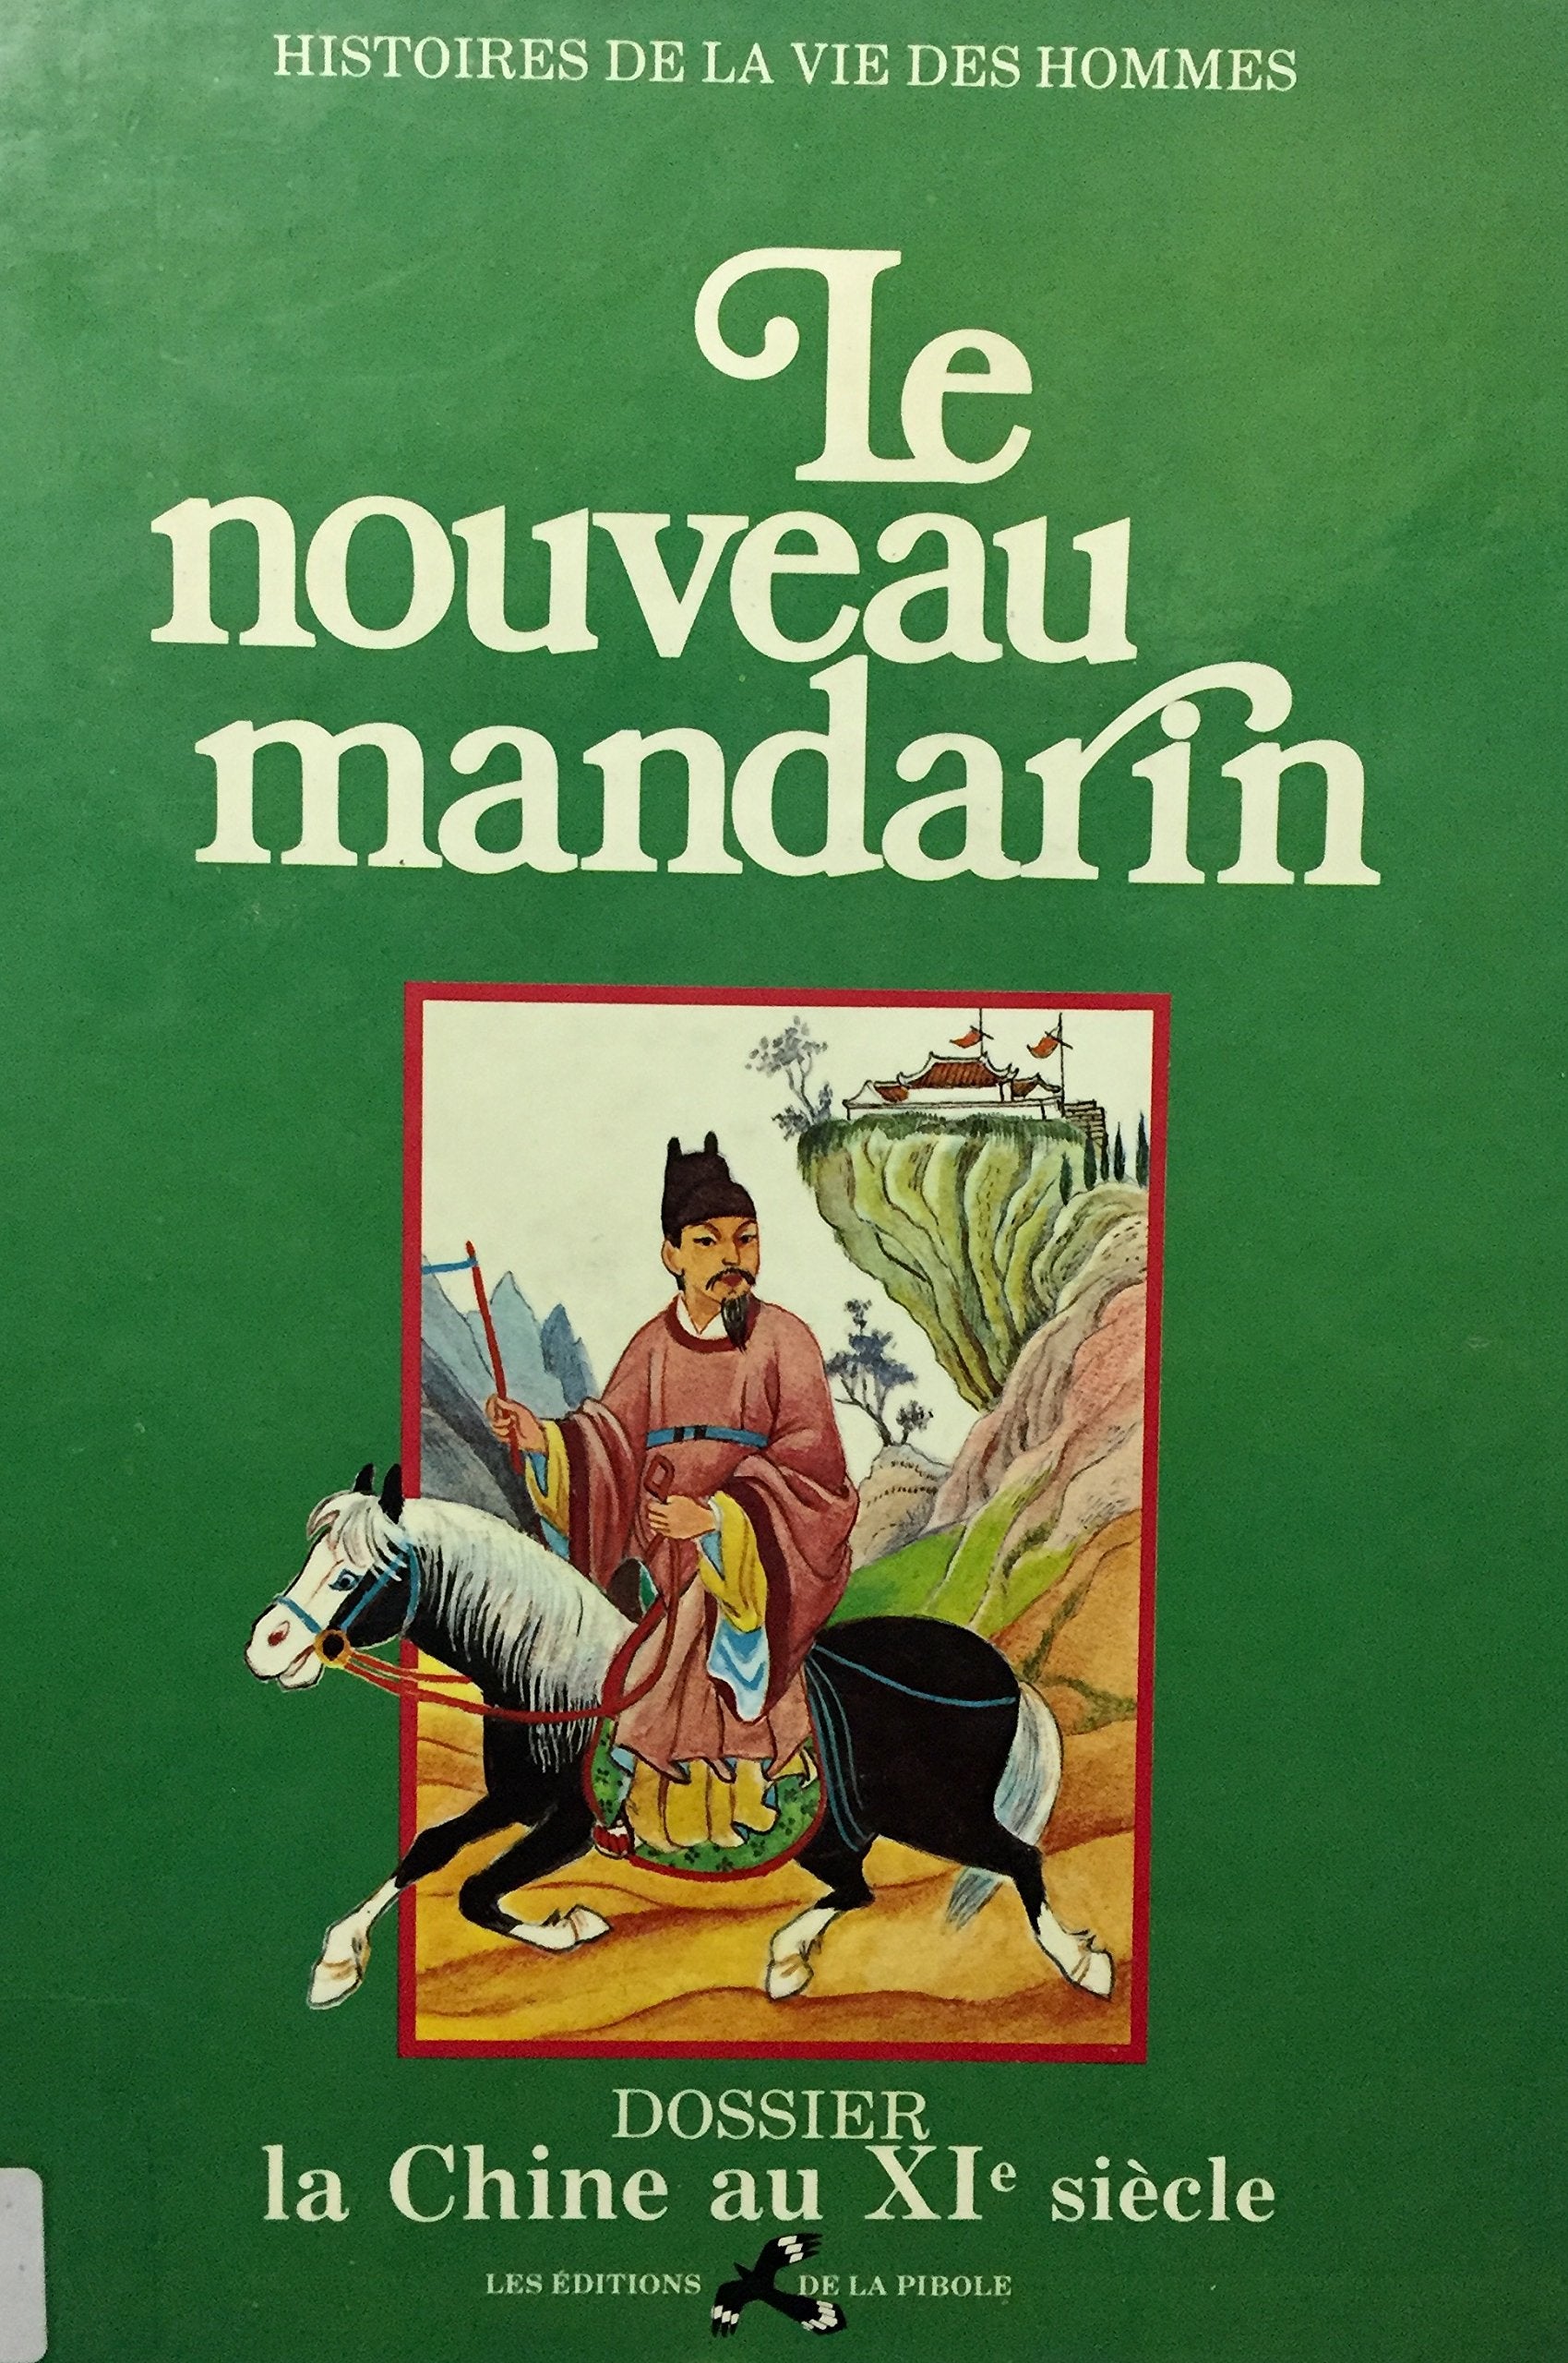 Livre ISBN 2864170078 Histoire de la vie des hommes : Le nouveau mandarin (Dossier la Chine au Xie siècle)